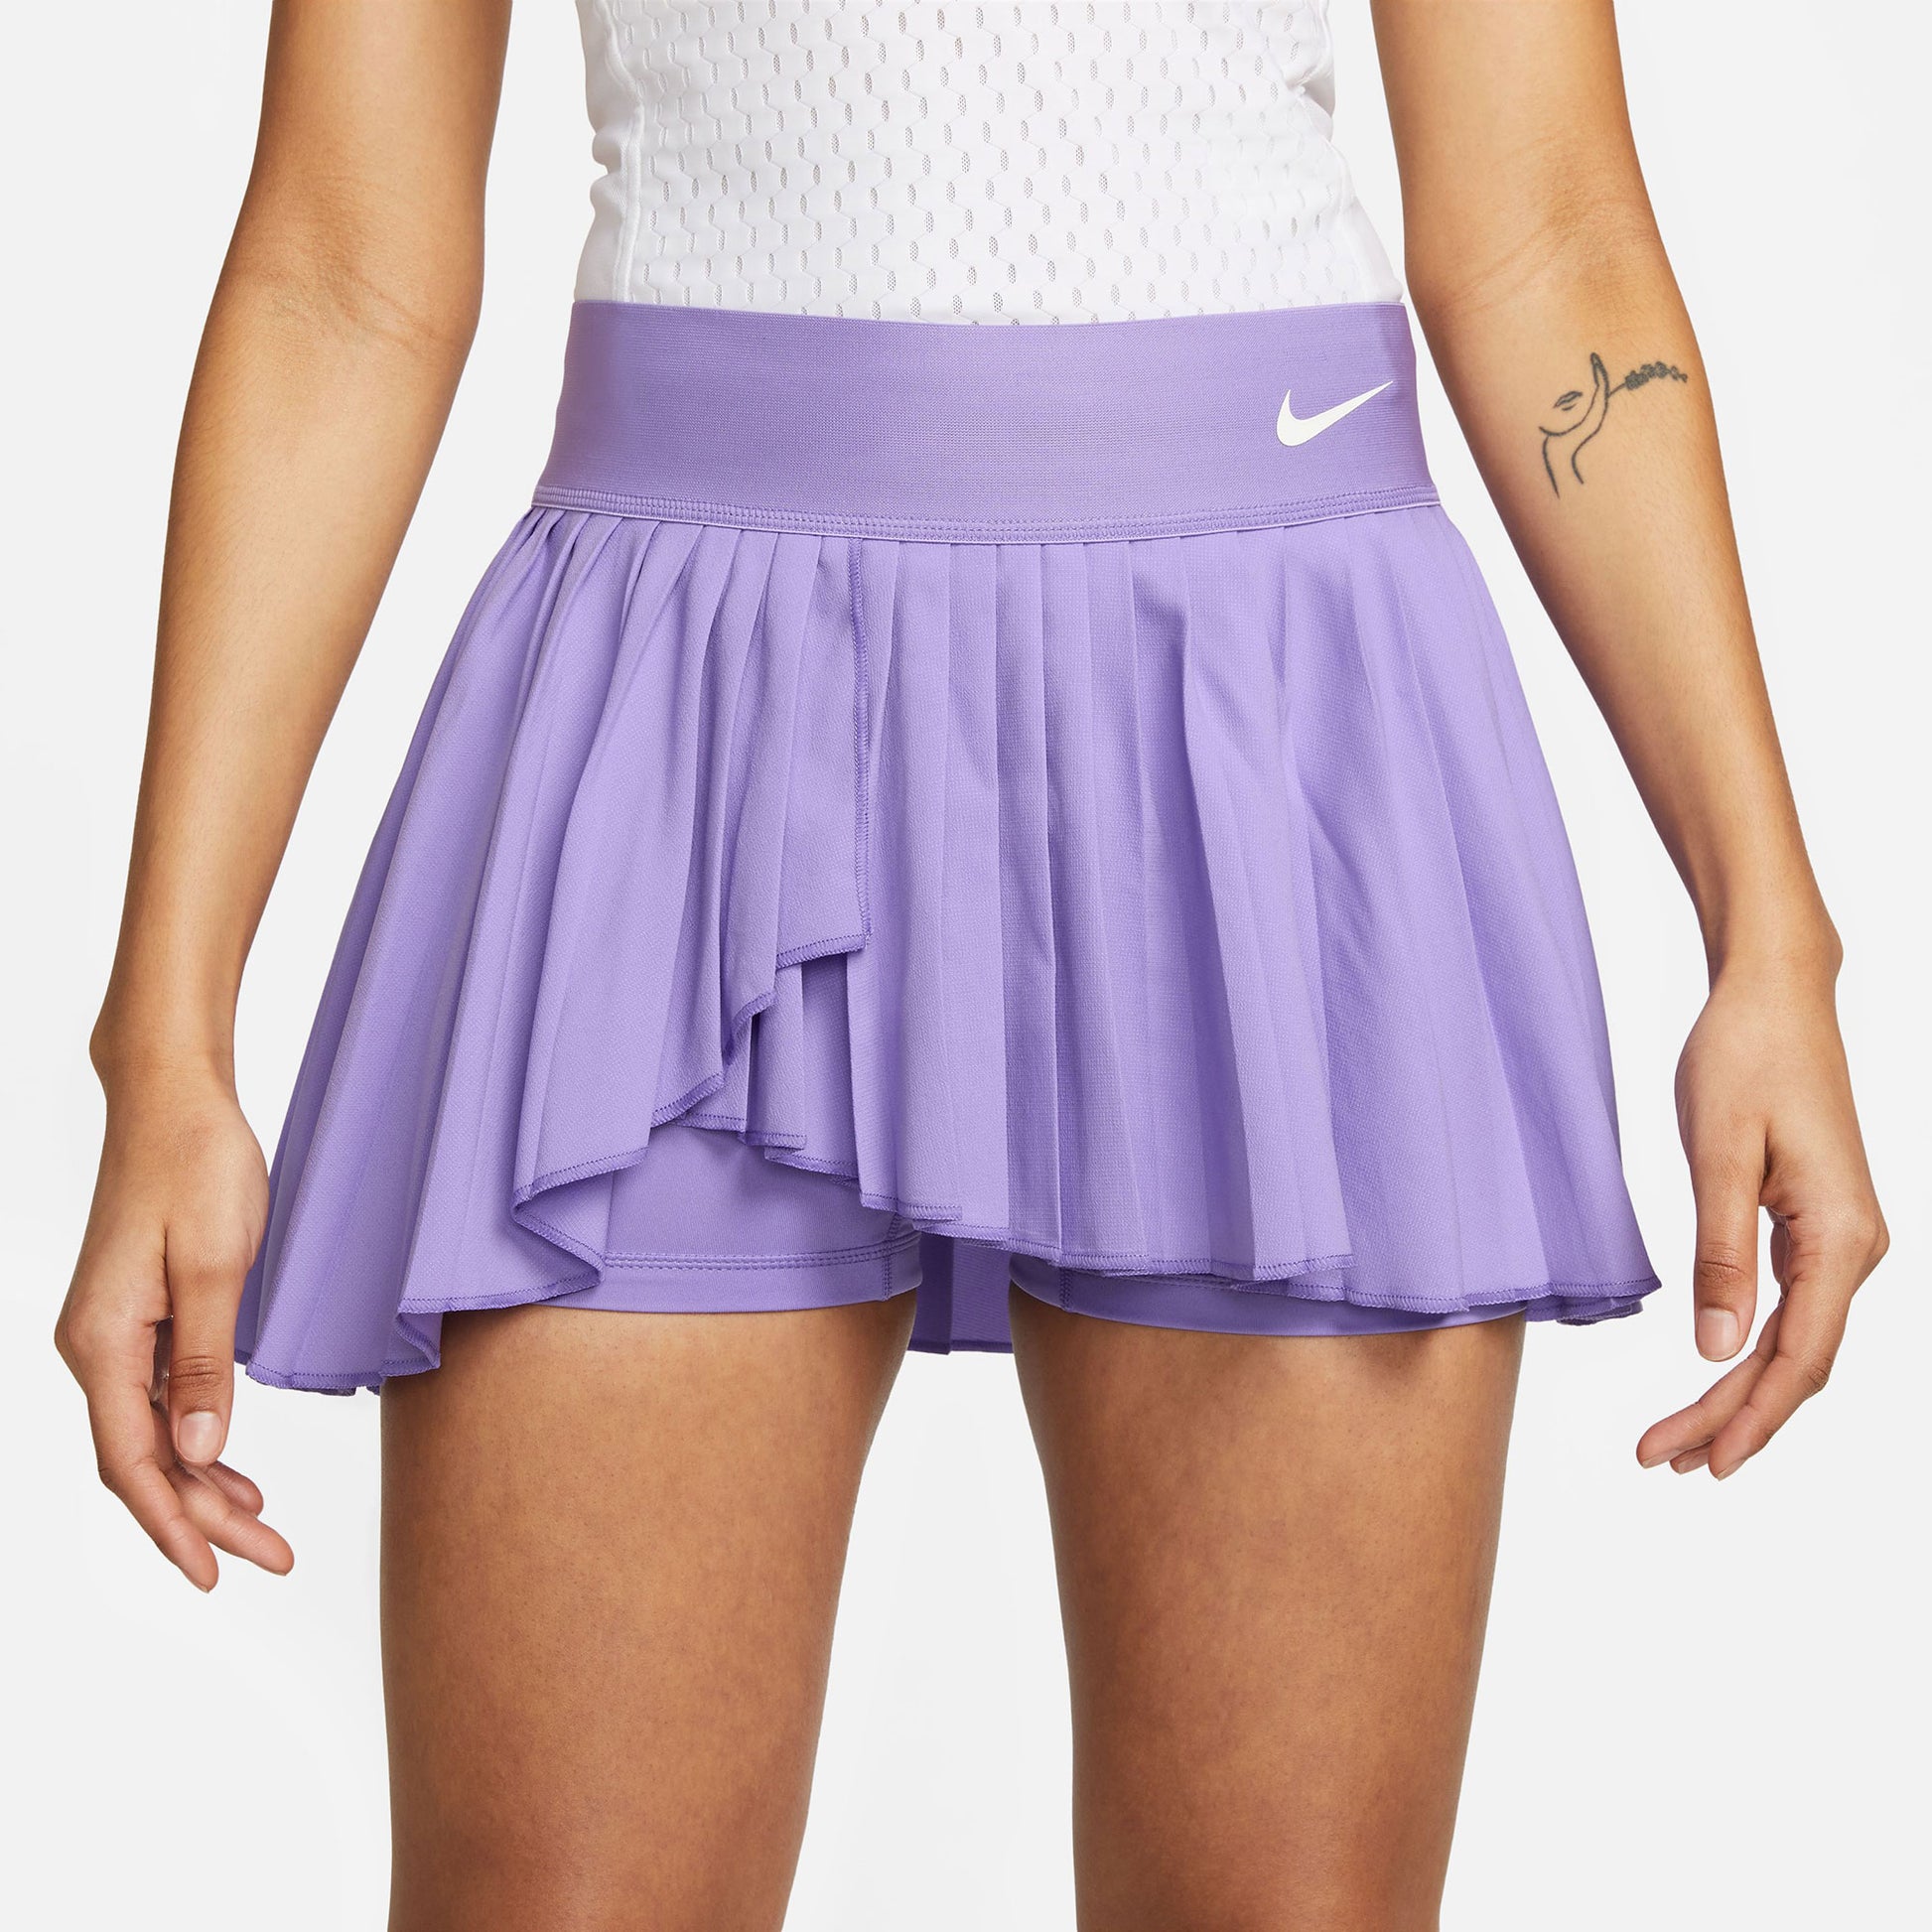 evenwichtig Dhr Patriottisch NikeCourt Dri-FIT Advantage Dames Geplooid Tennisrokje Paars – Tennis Only